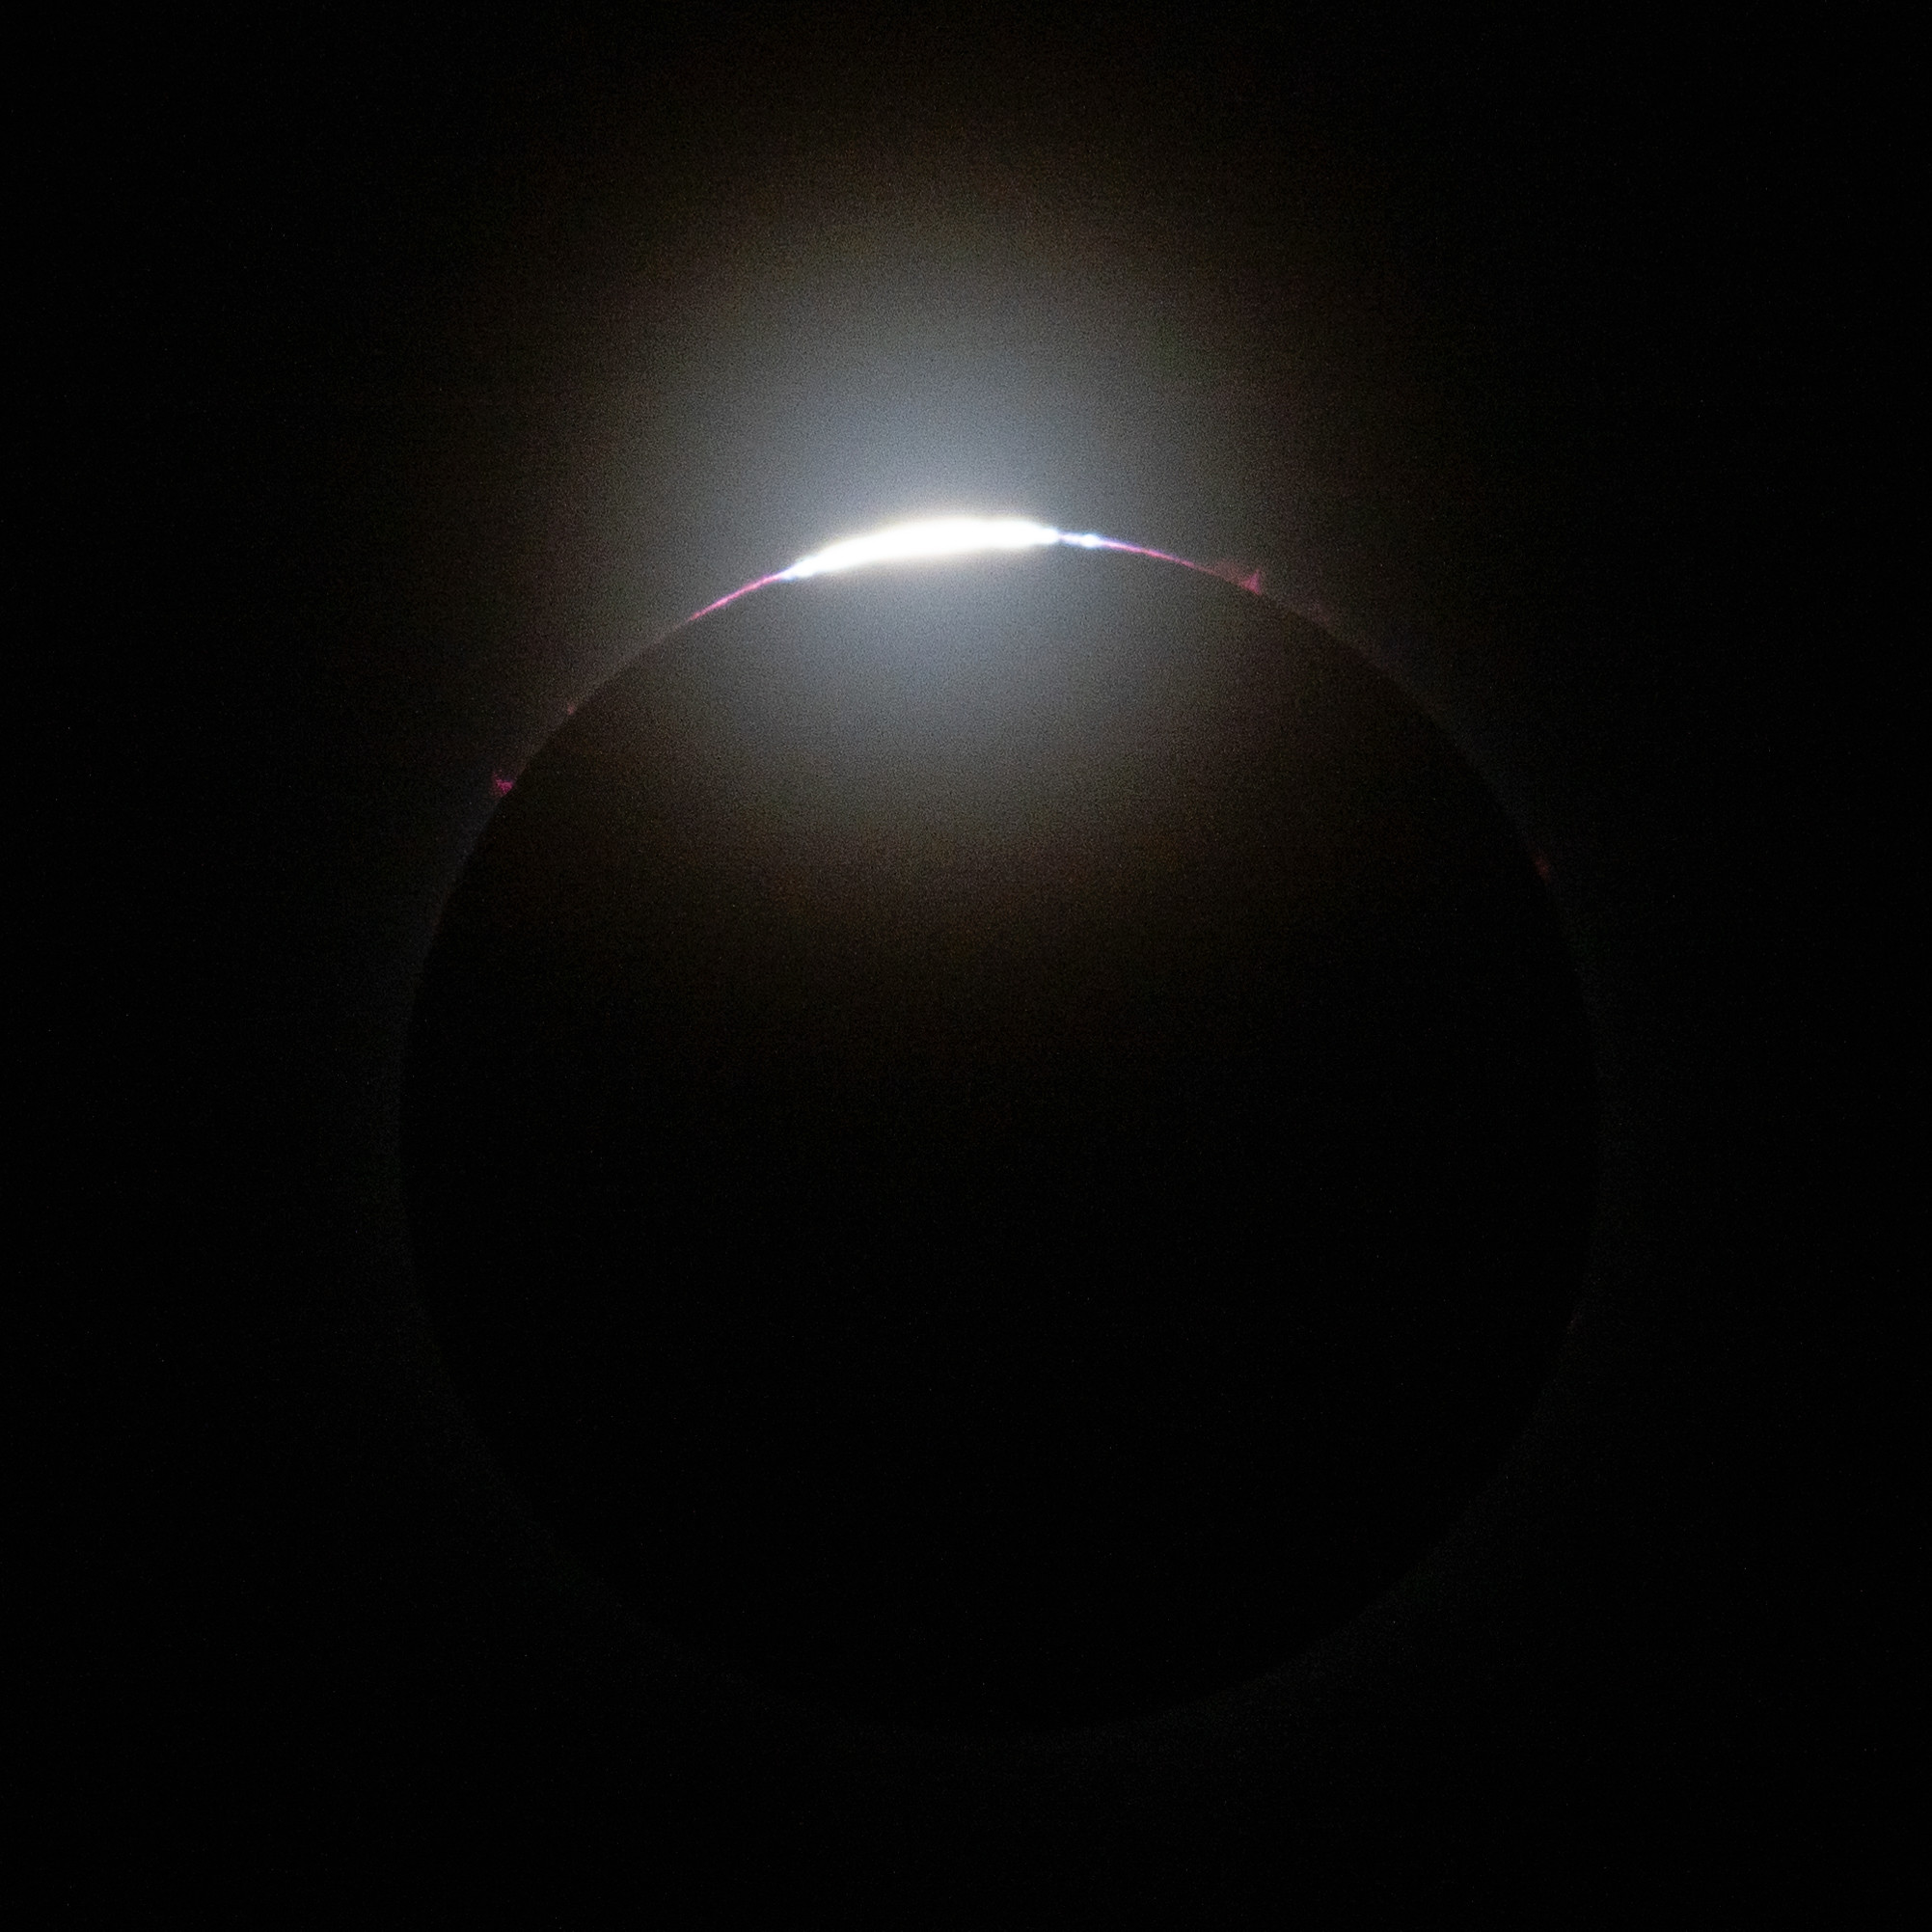 Os últimos raios do sol espreitam através das montanhas da lua nesta imagem do eclipse solar total de 8 de abril.